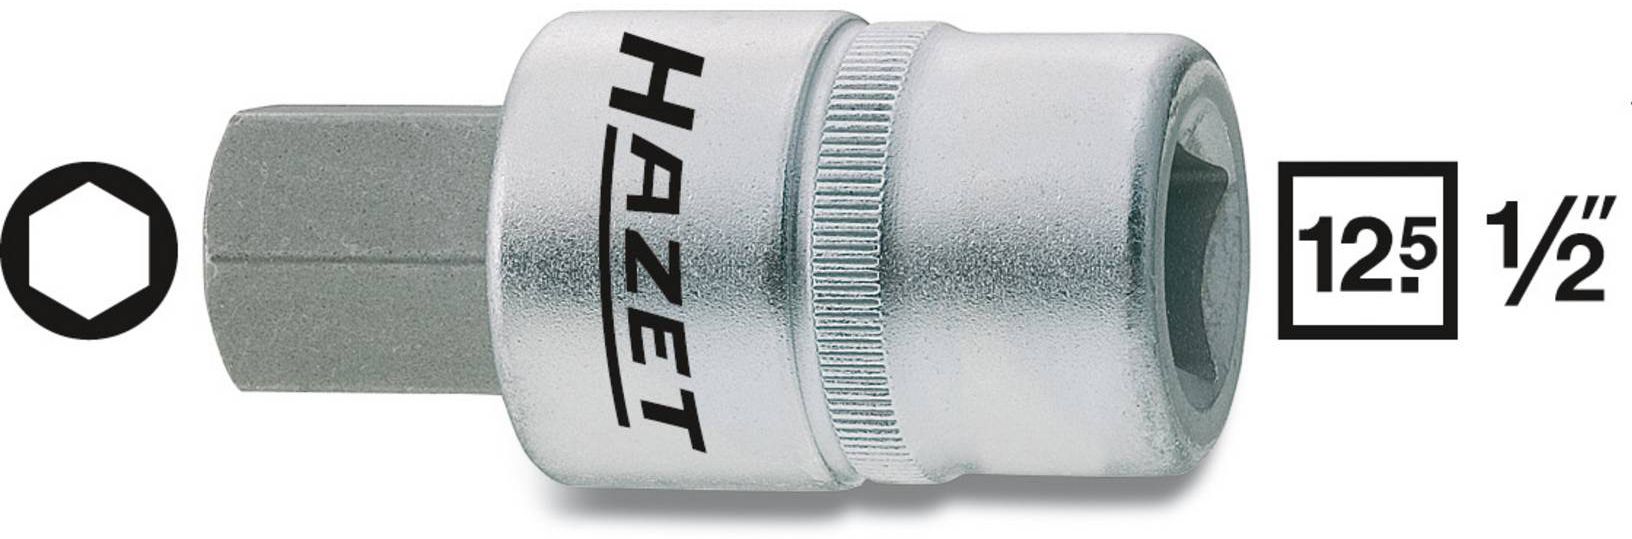 HAZET Schraubendreher-Einsatz, Inbus 986-10mm, 1/2", L: 60mm, D: 23mm - Steck- und Drehmomentschlüssel